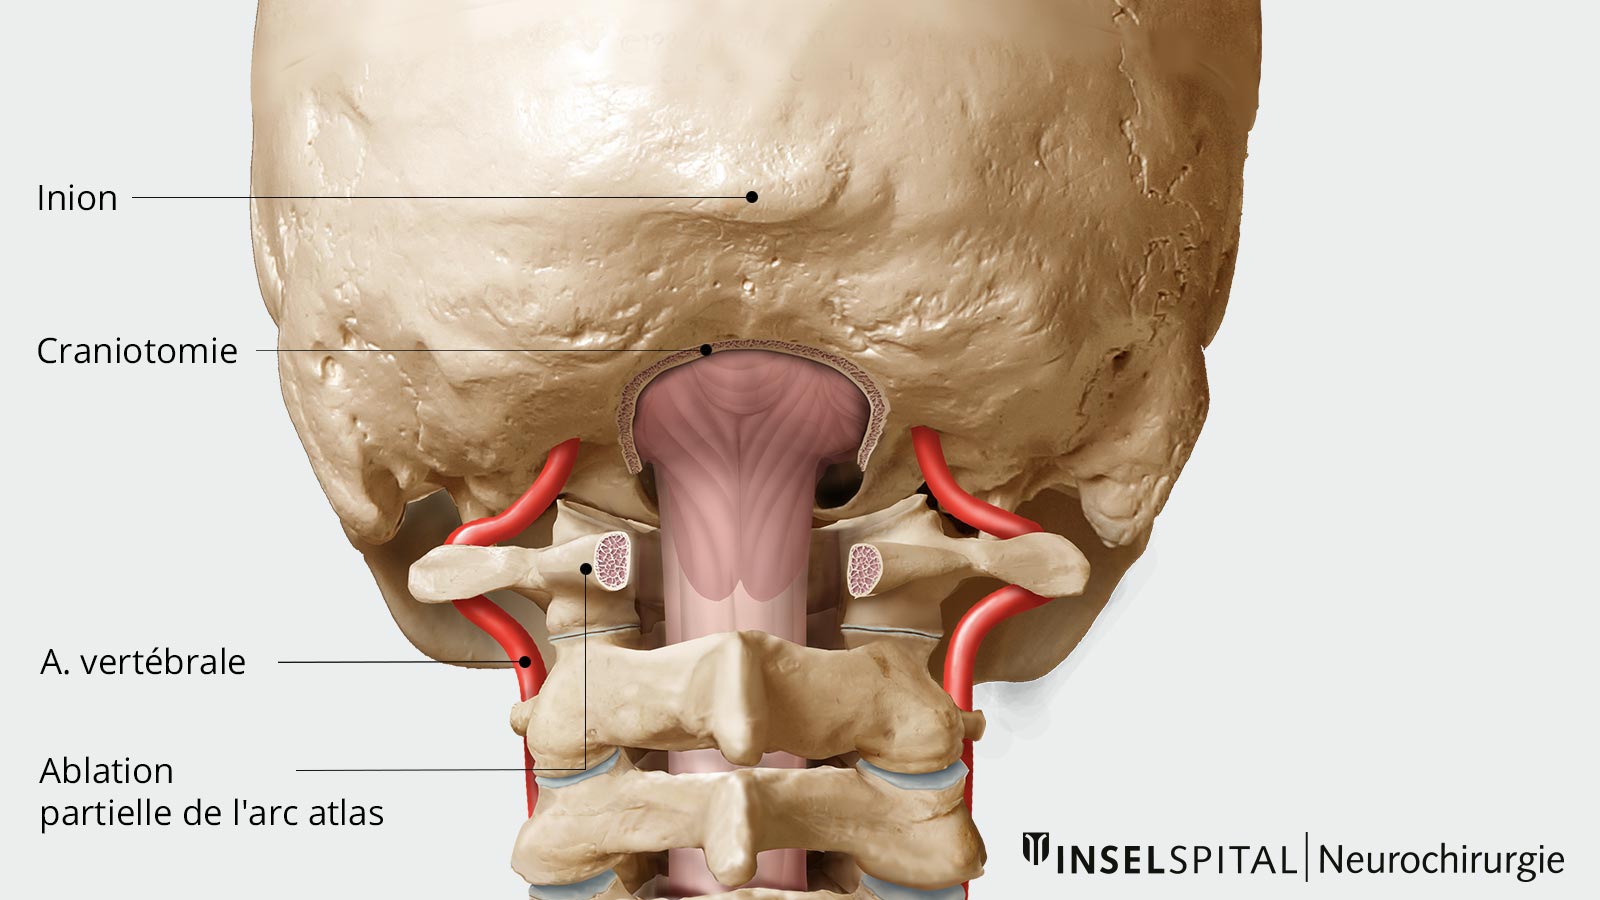 Dessin de la décompression osseuse avec ablation partielle de l'arc atlas